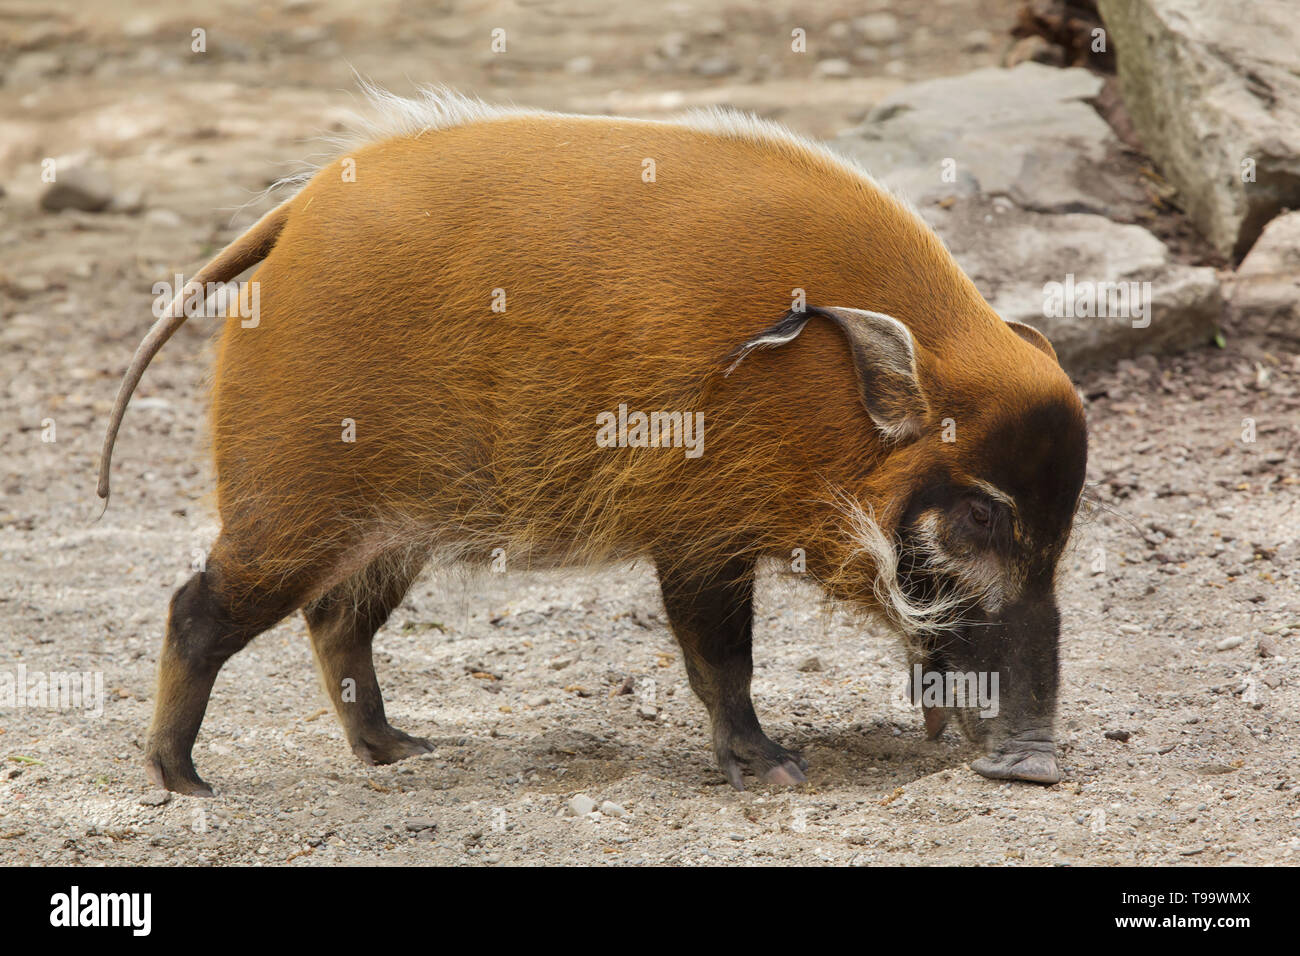 Del río Rojo Hog (Potamochoerus porcus), también conocido como el cerdo de Bush. Foto de stock